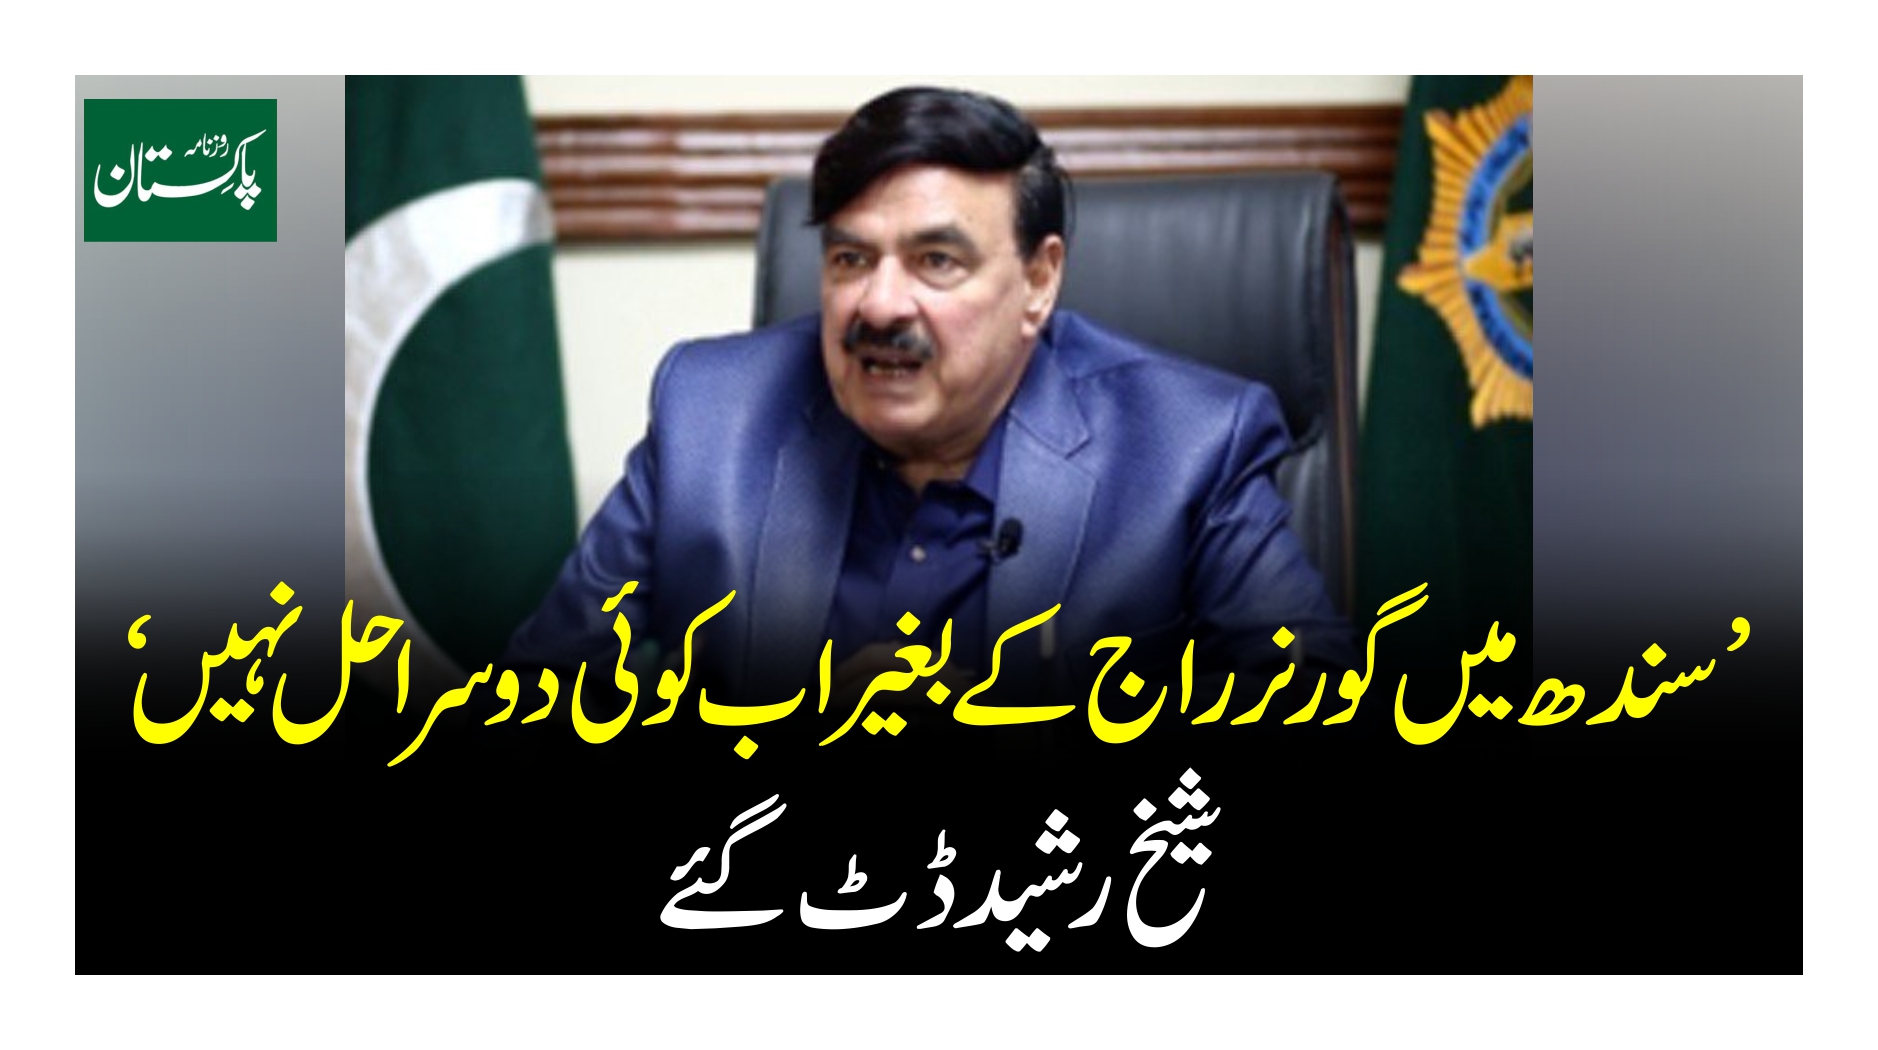 سندھ میں گورنر راج کے بغیر اب کوئی دوسرا حل نہیں شیخ رشید ڈٹ گئے